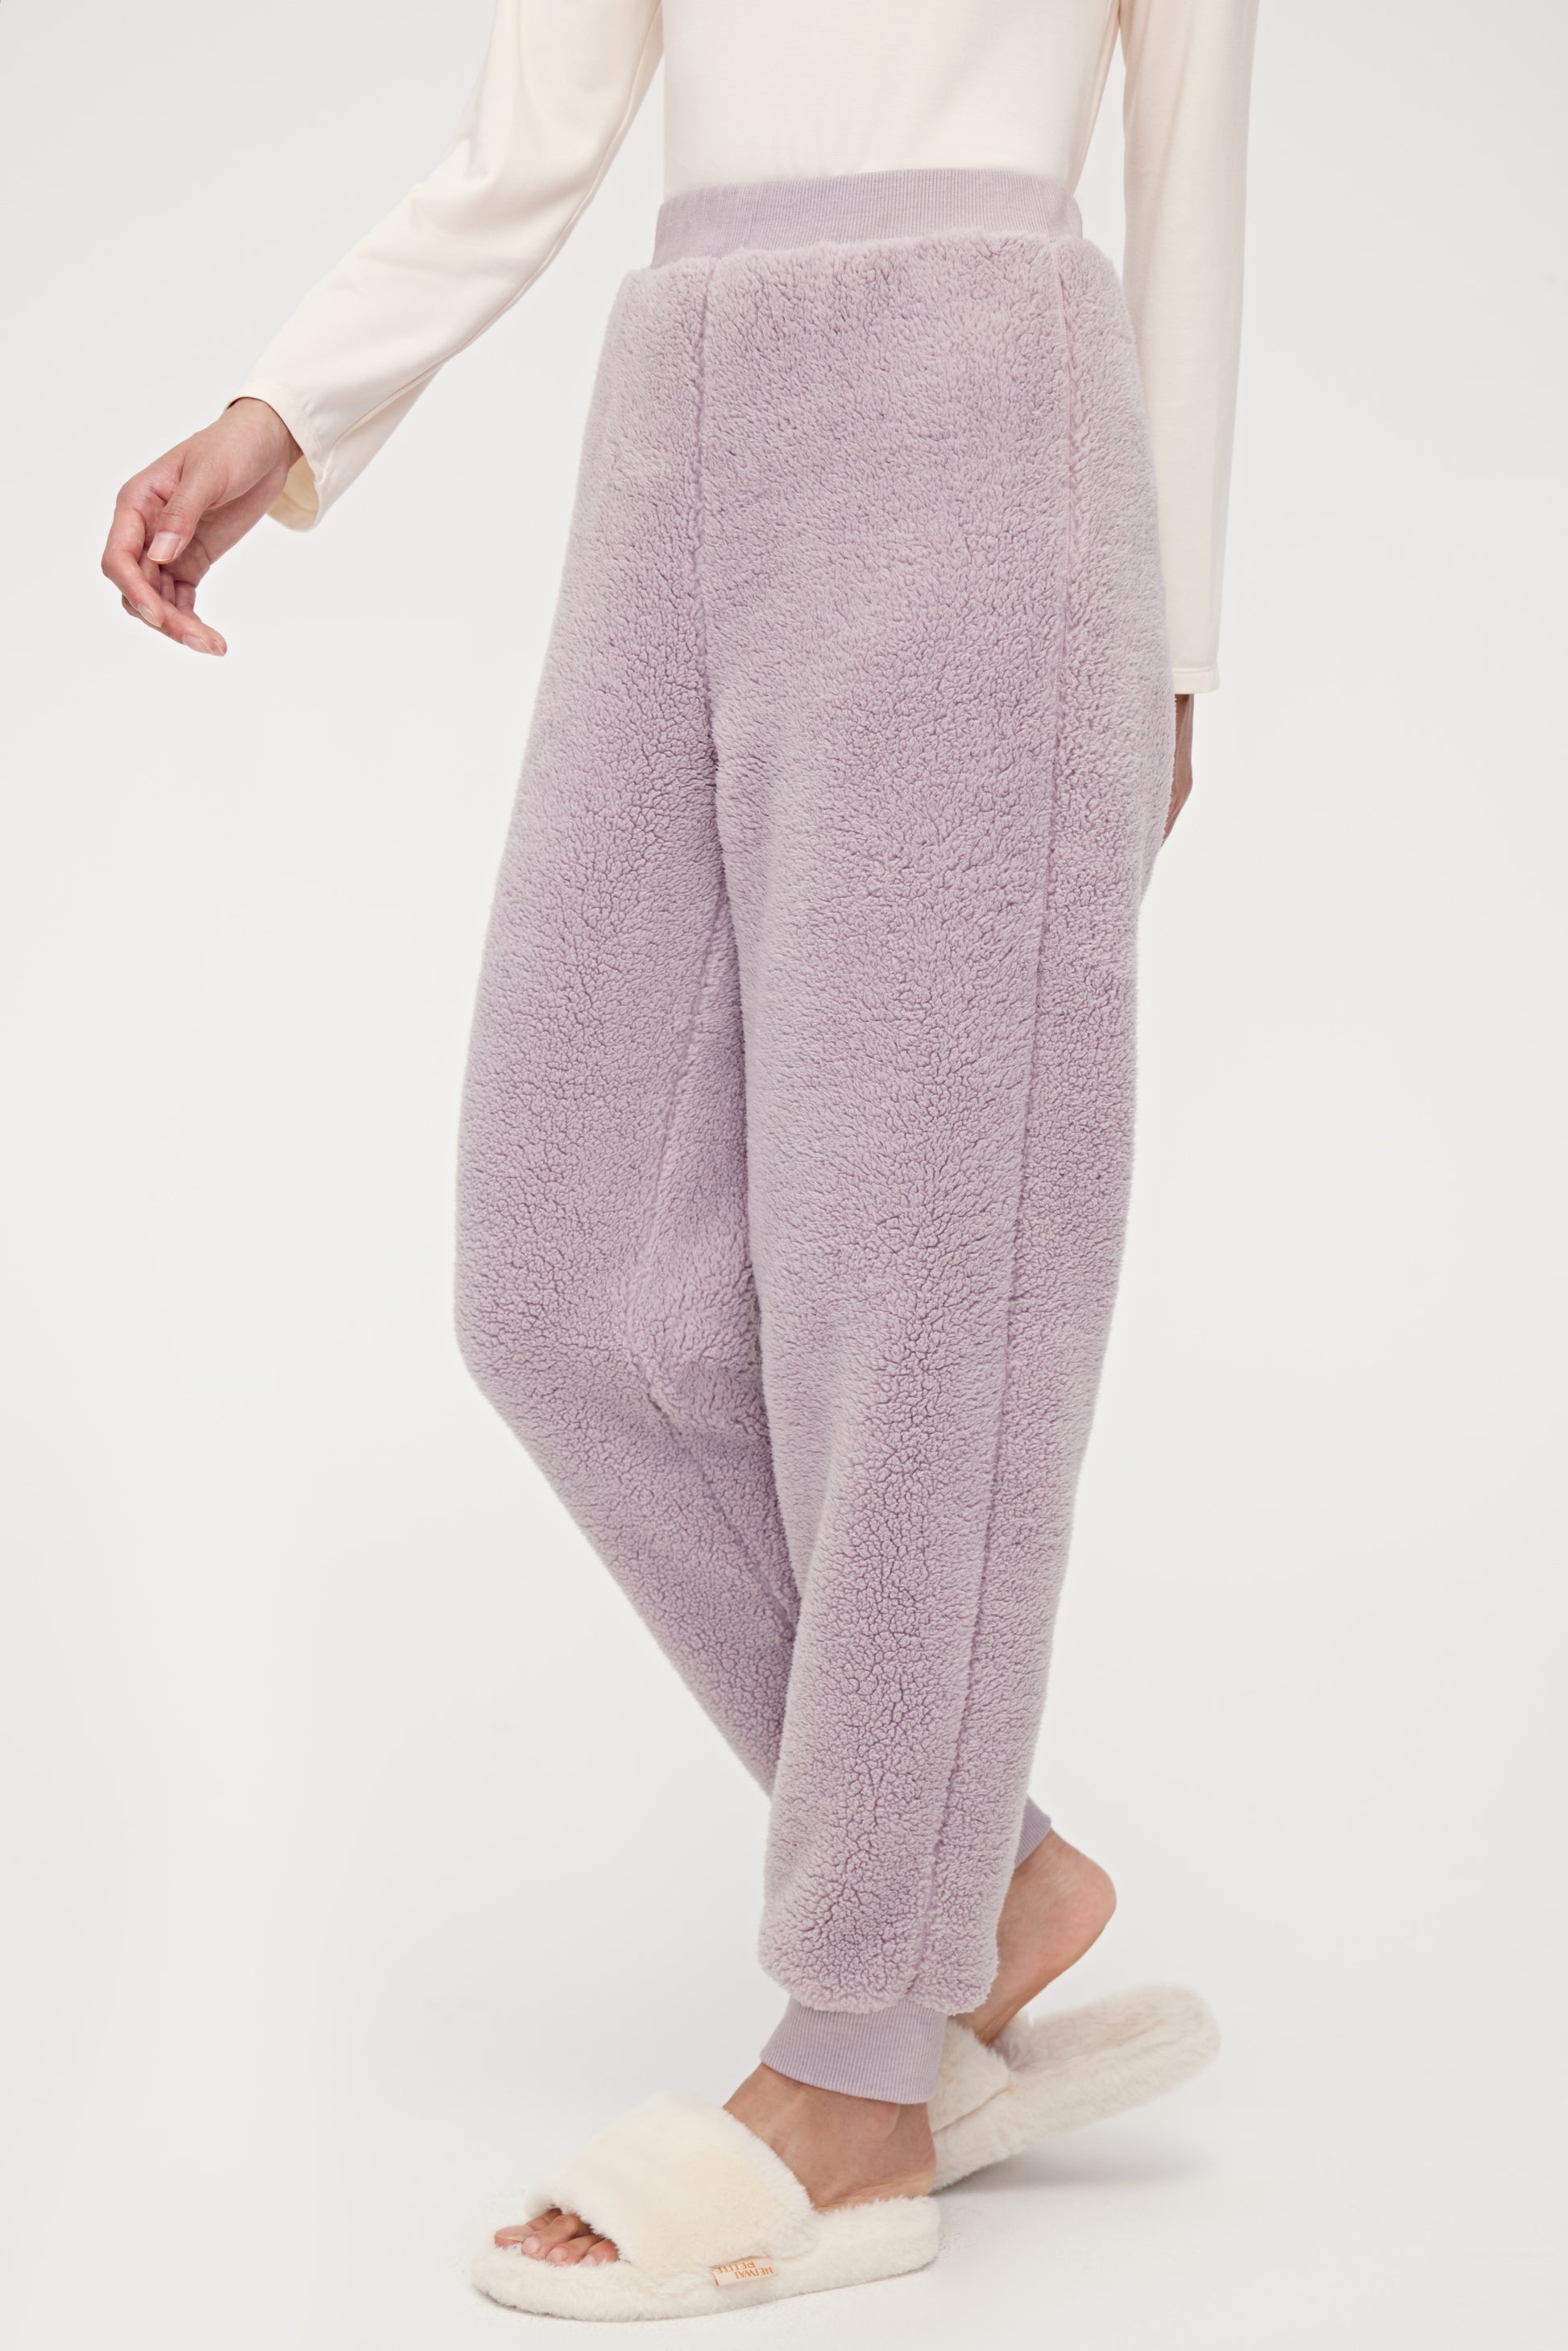 Hooever Women's Fluzzy Sherpa Fleece Pajamas Warm Pullover Lapel Sleepwear  Sets(eige-S) Beige at  Women's Clothing store